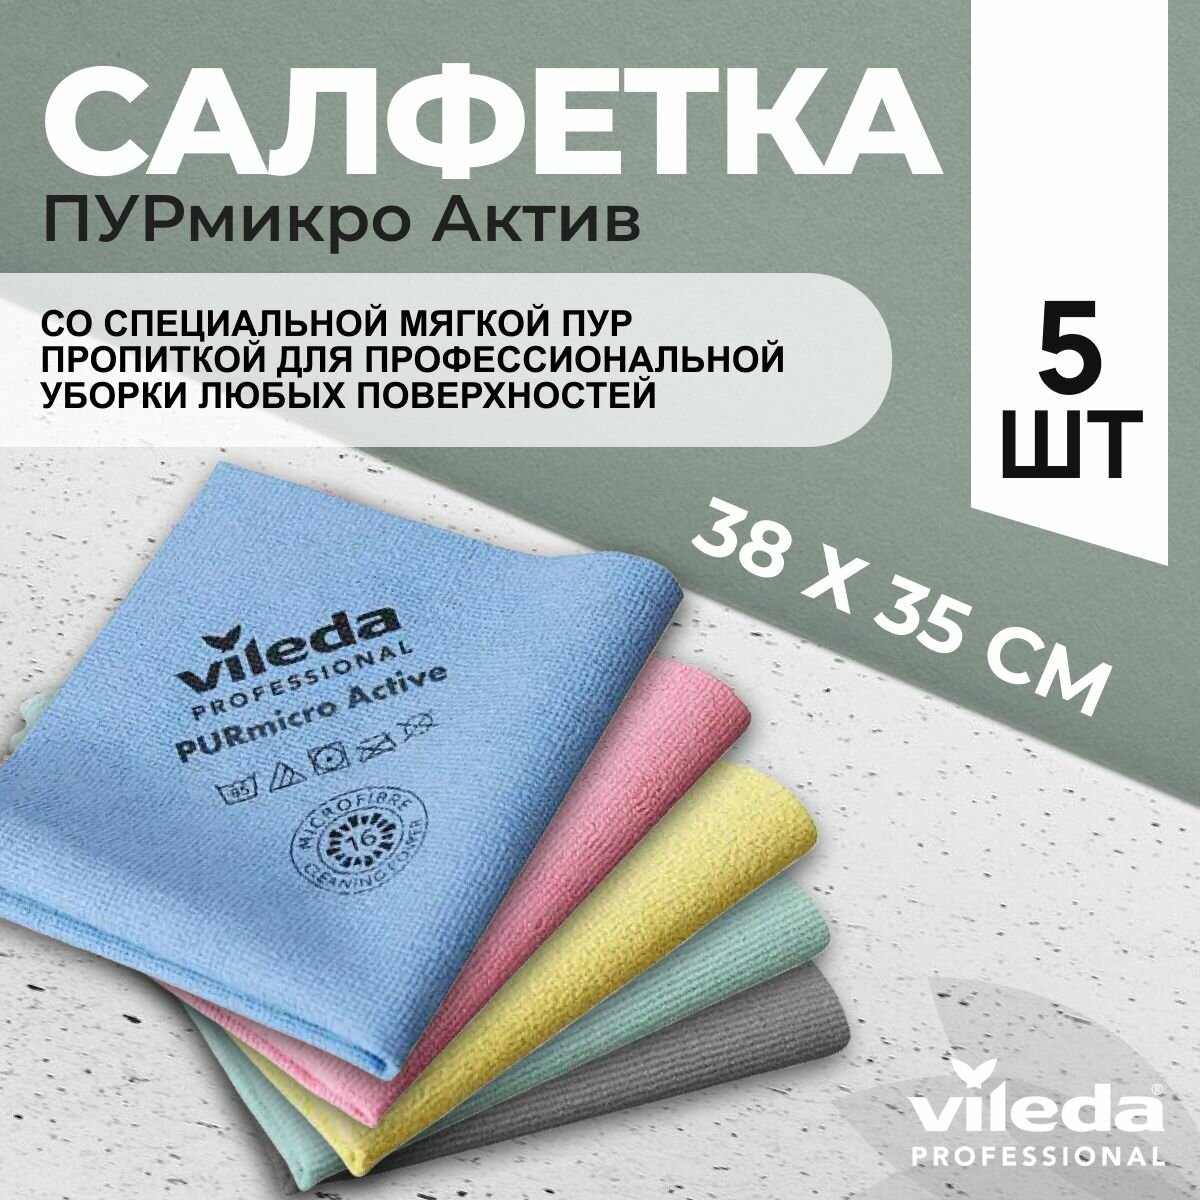 Салфетки профессиональные для уборки из микроволокна Vileda ПУРмикро Актив PURmicro Active 38х35 см, цветные, 5 шт.